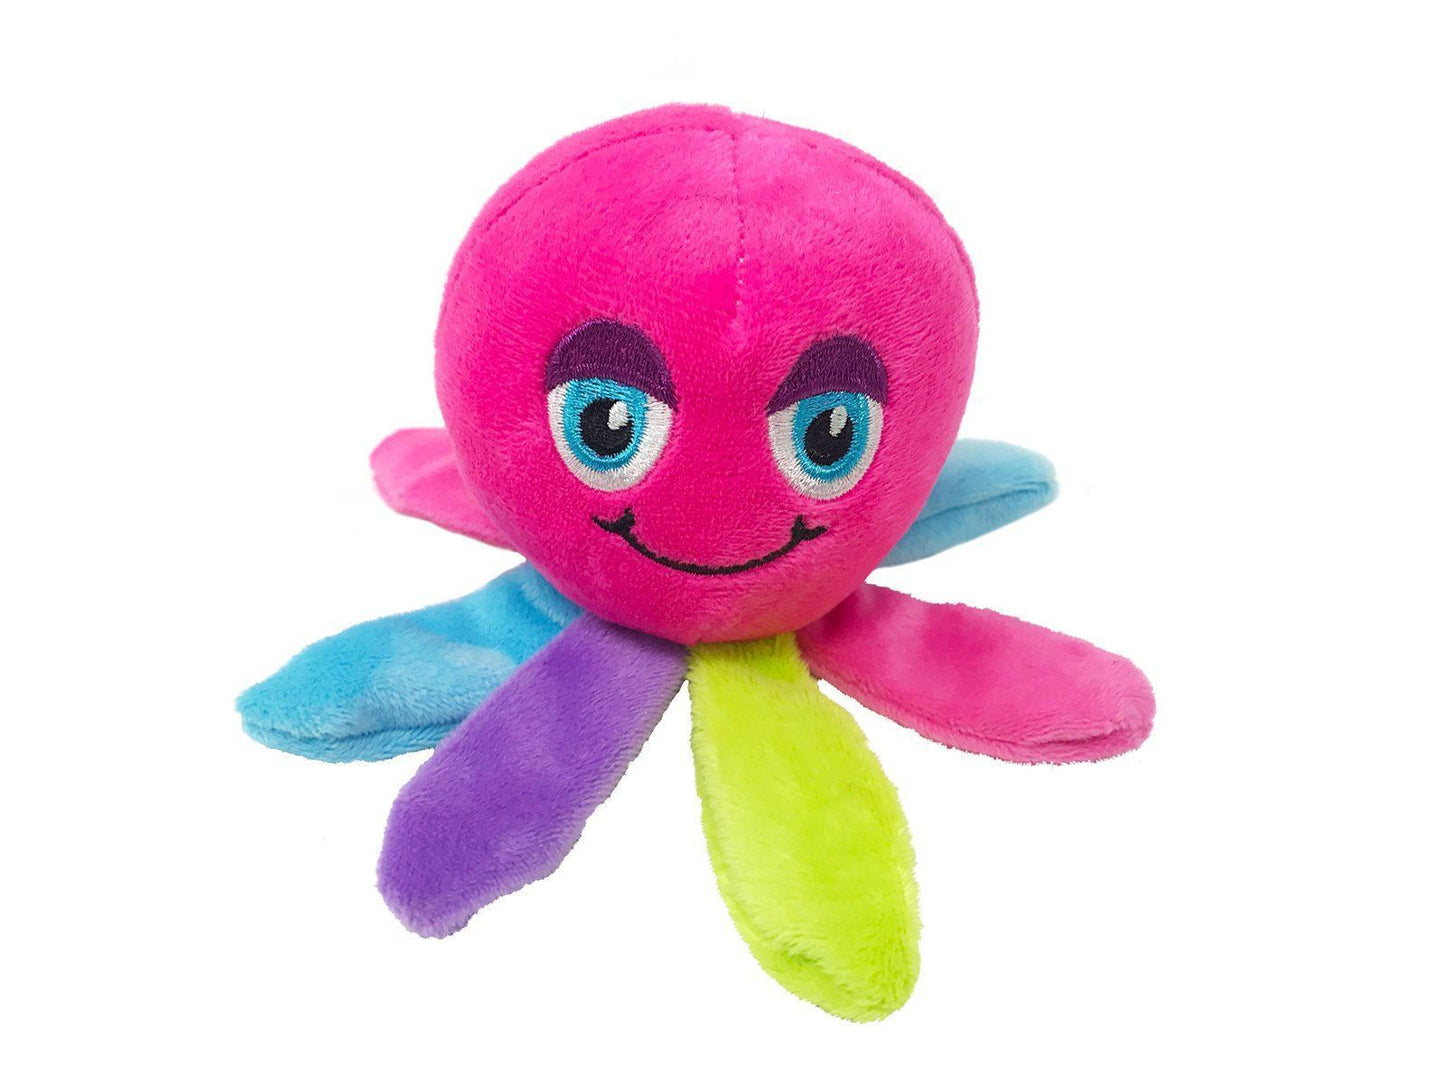 Mini Plush Toys Octopus Image